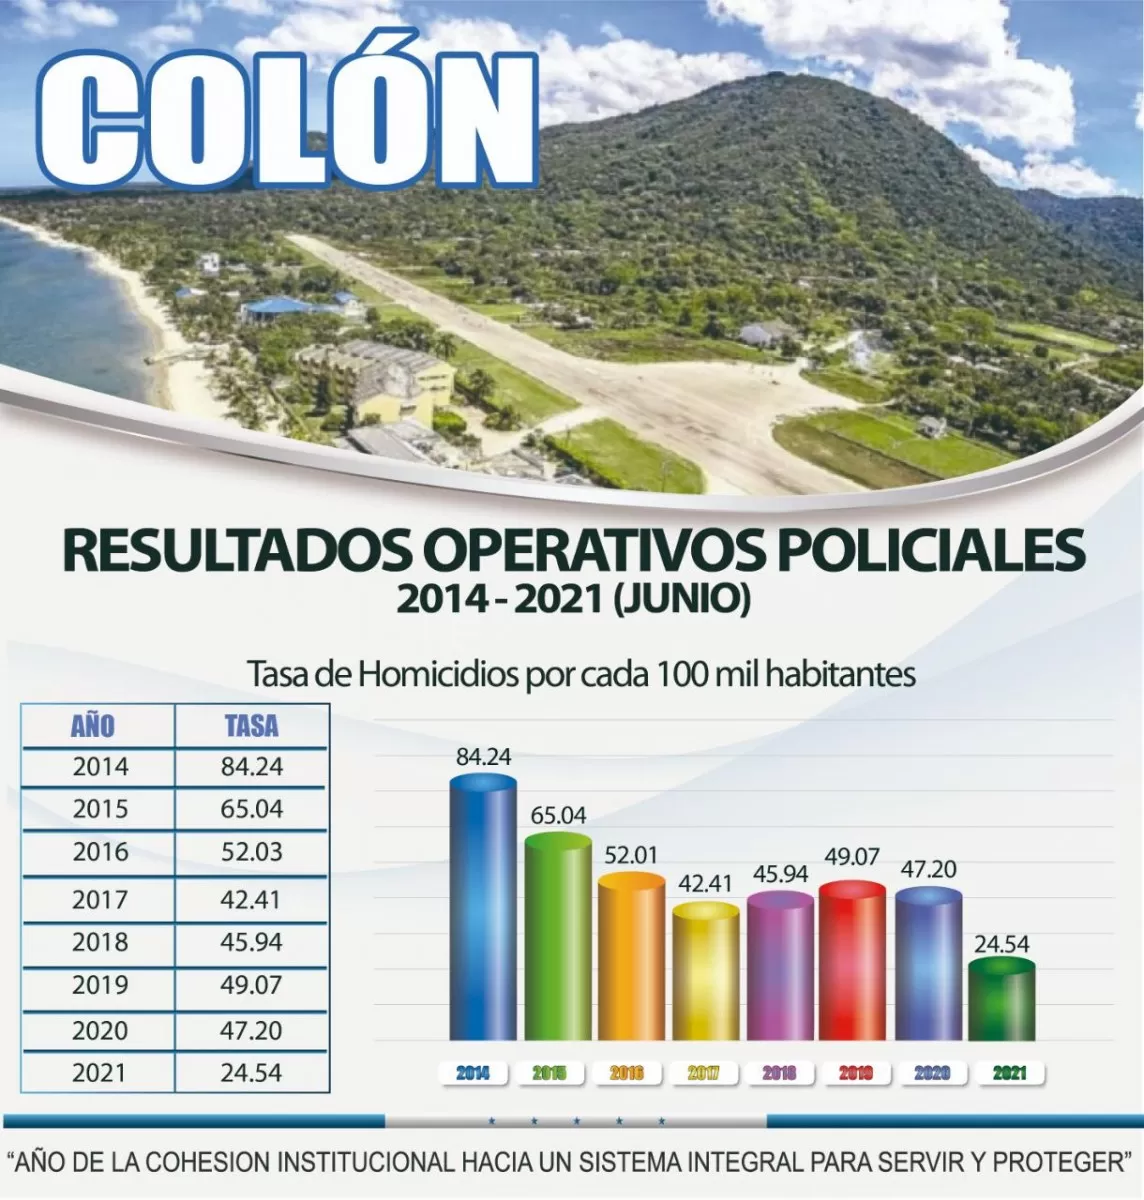 Entre 2014 y 2020 Colón baja 37.04 puntos la tasa de homicidios